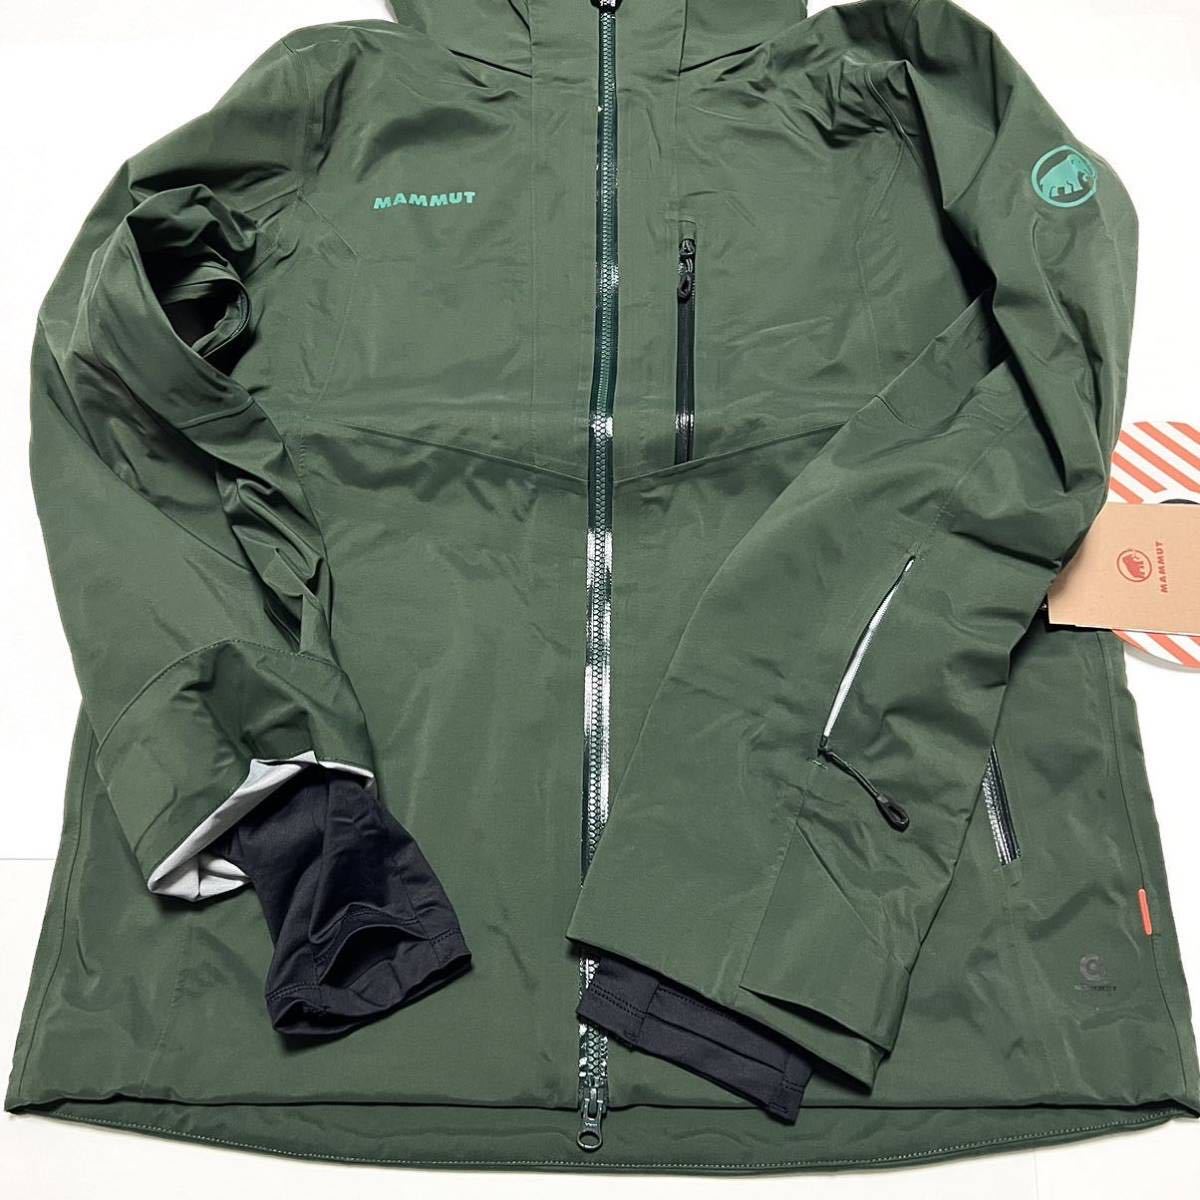 XL 新品 マムート Stoney HS Jacket Men ストーニー ジャケット 緑 MAMMUT スキー スノーボード ウェア バックカントリー 雪 スノー 防水